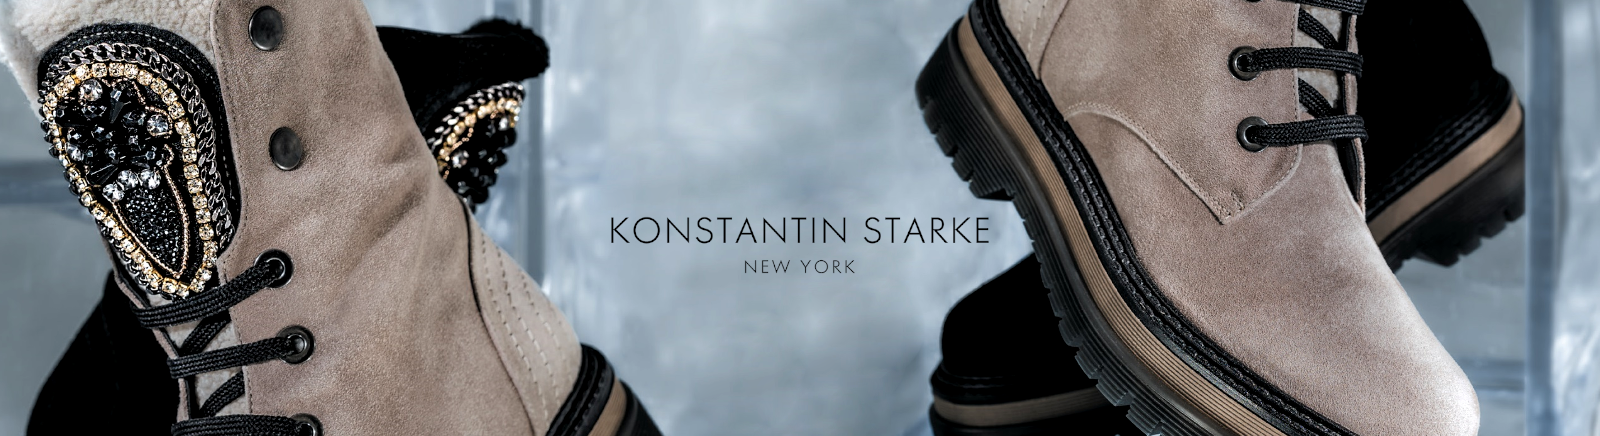 Konstantin Starke Schuhe online kaufen im Shop von GISY